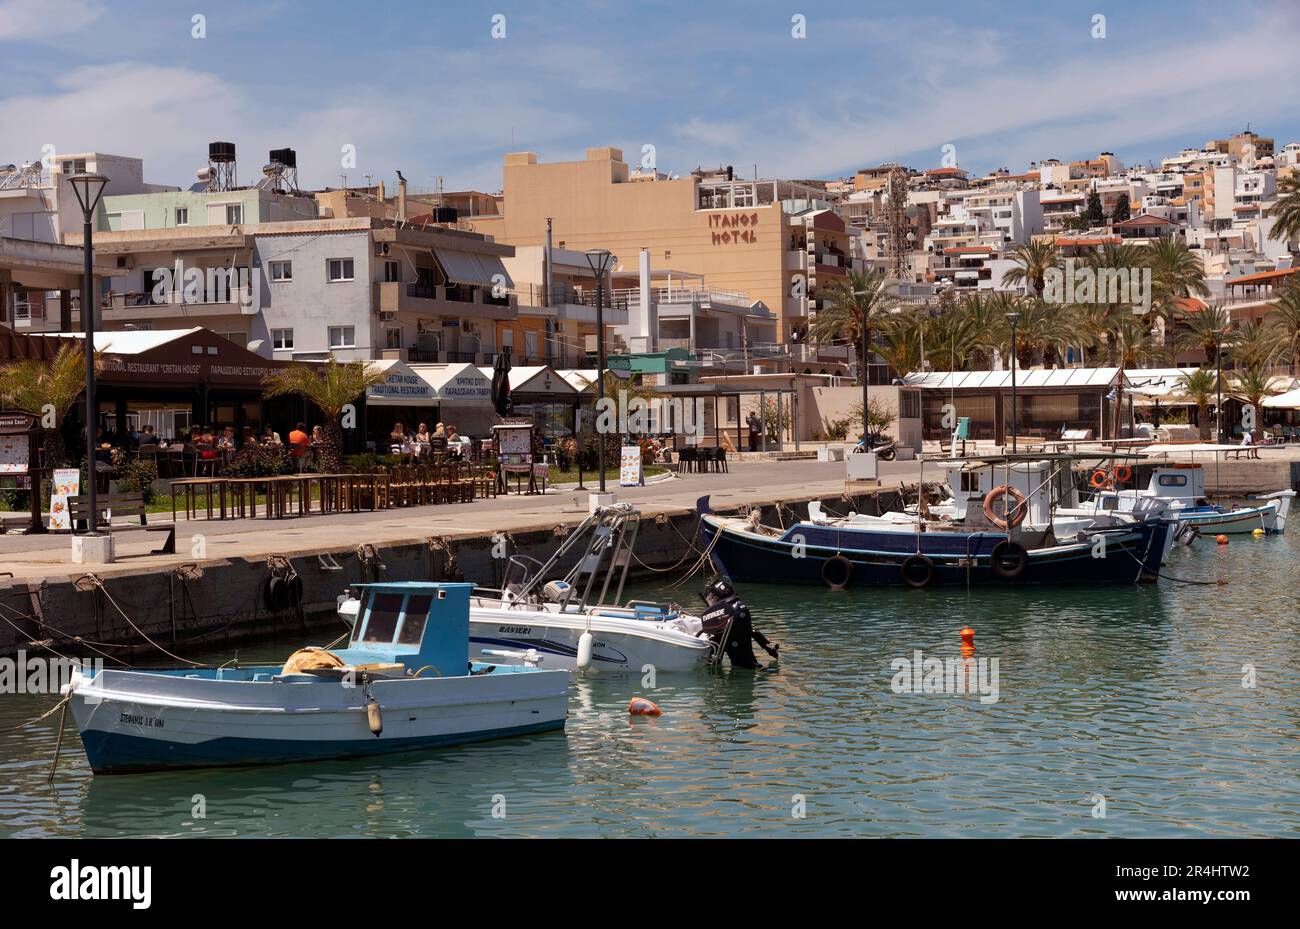 Östliches Kreta, Griechenland, Europa. 2023, Uferpromenade des Siteia Hafens im östlichen Kreta mit seinen kleinen Booten, Hotels und Restaurants am Meer Stockfoto